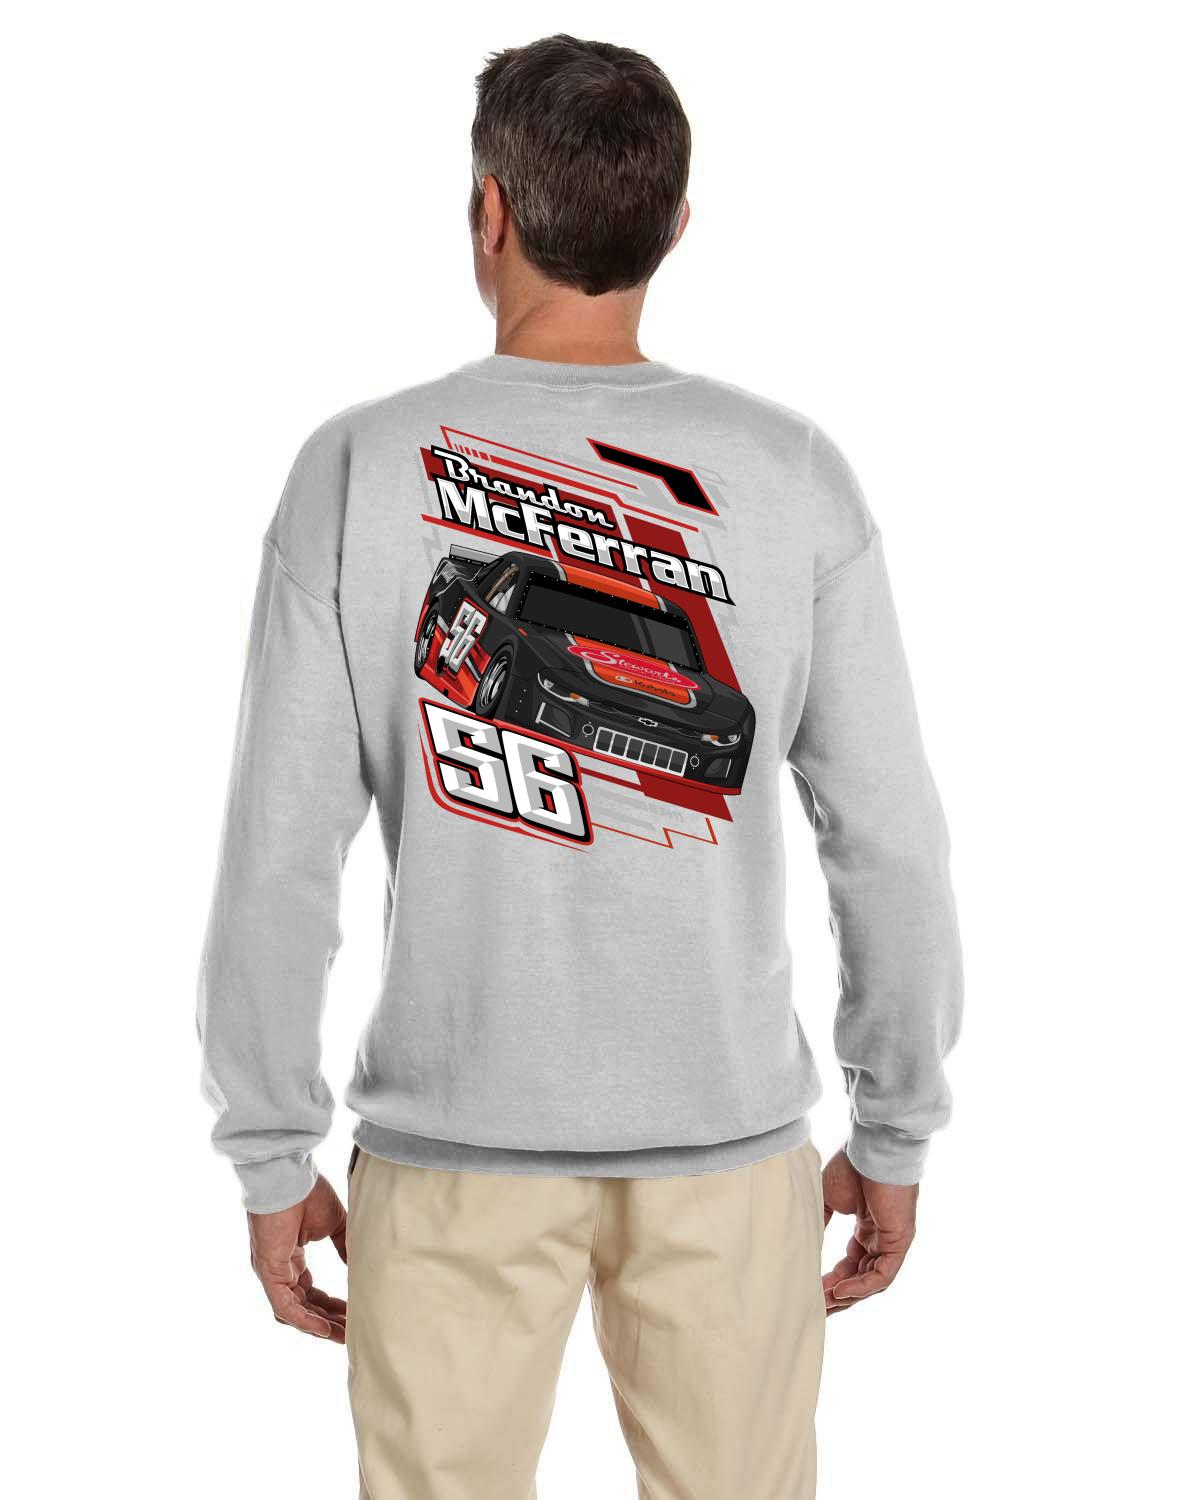 Brandon McFerran Racing Adult crew neck sweater